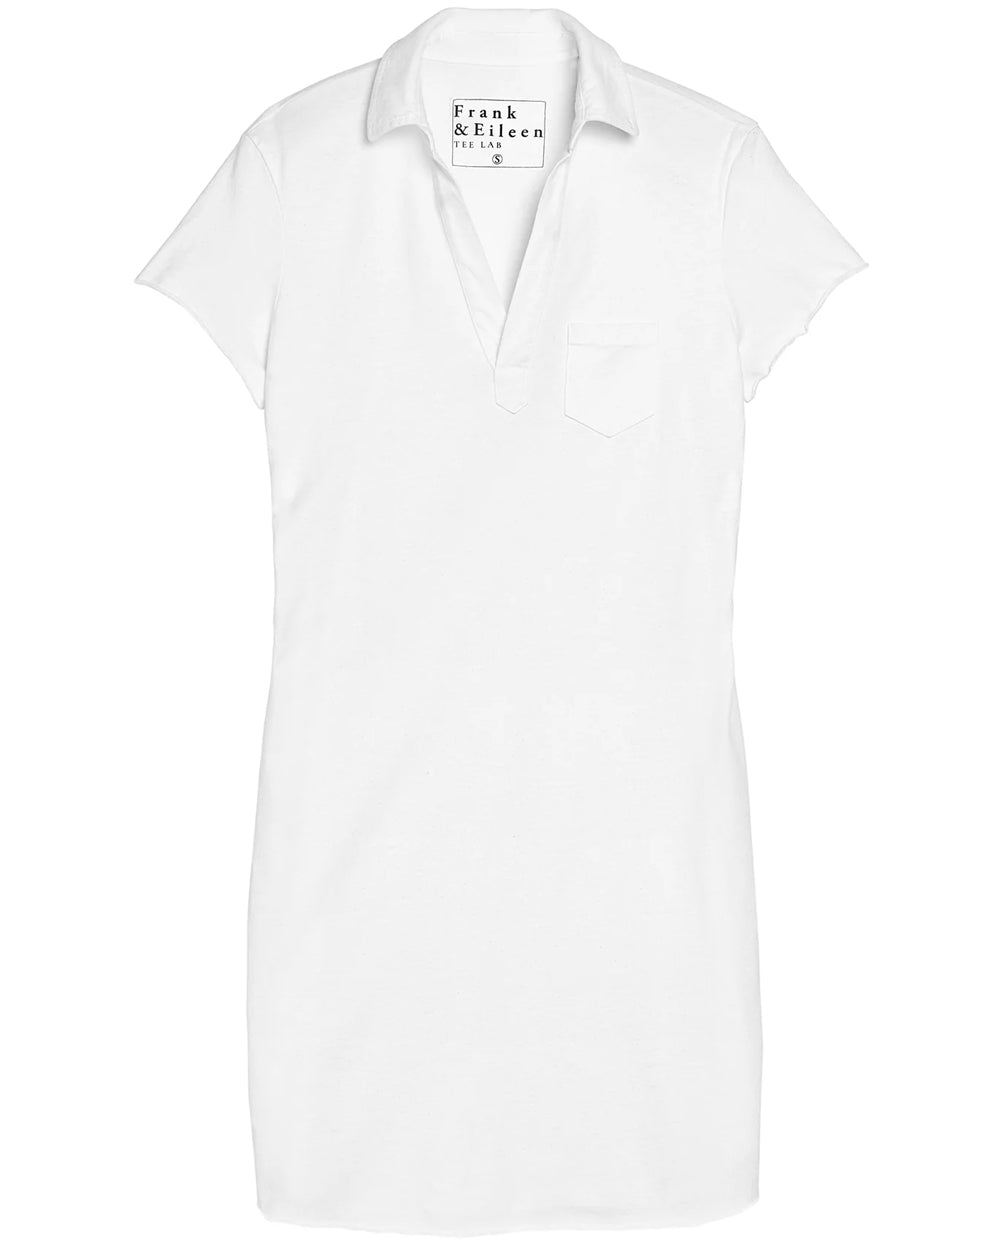 White Lauren Polo Dress